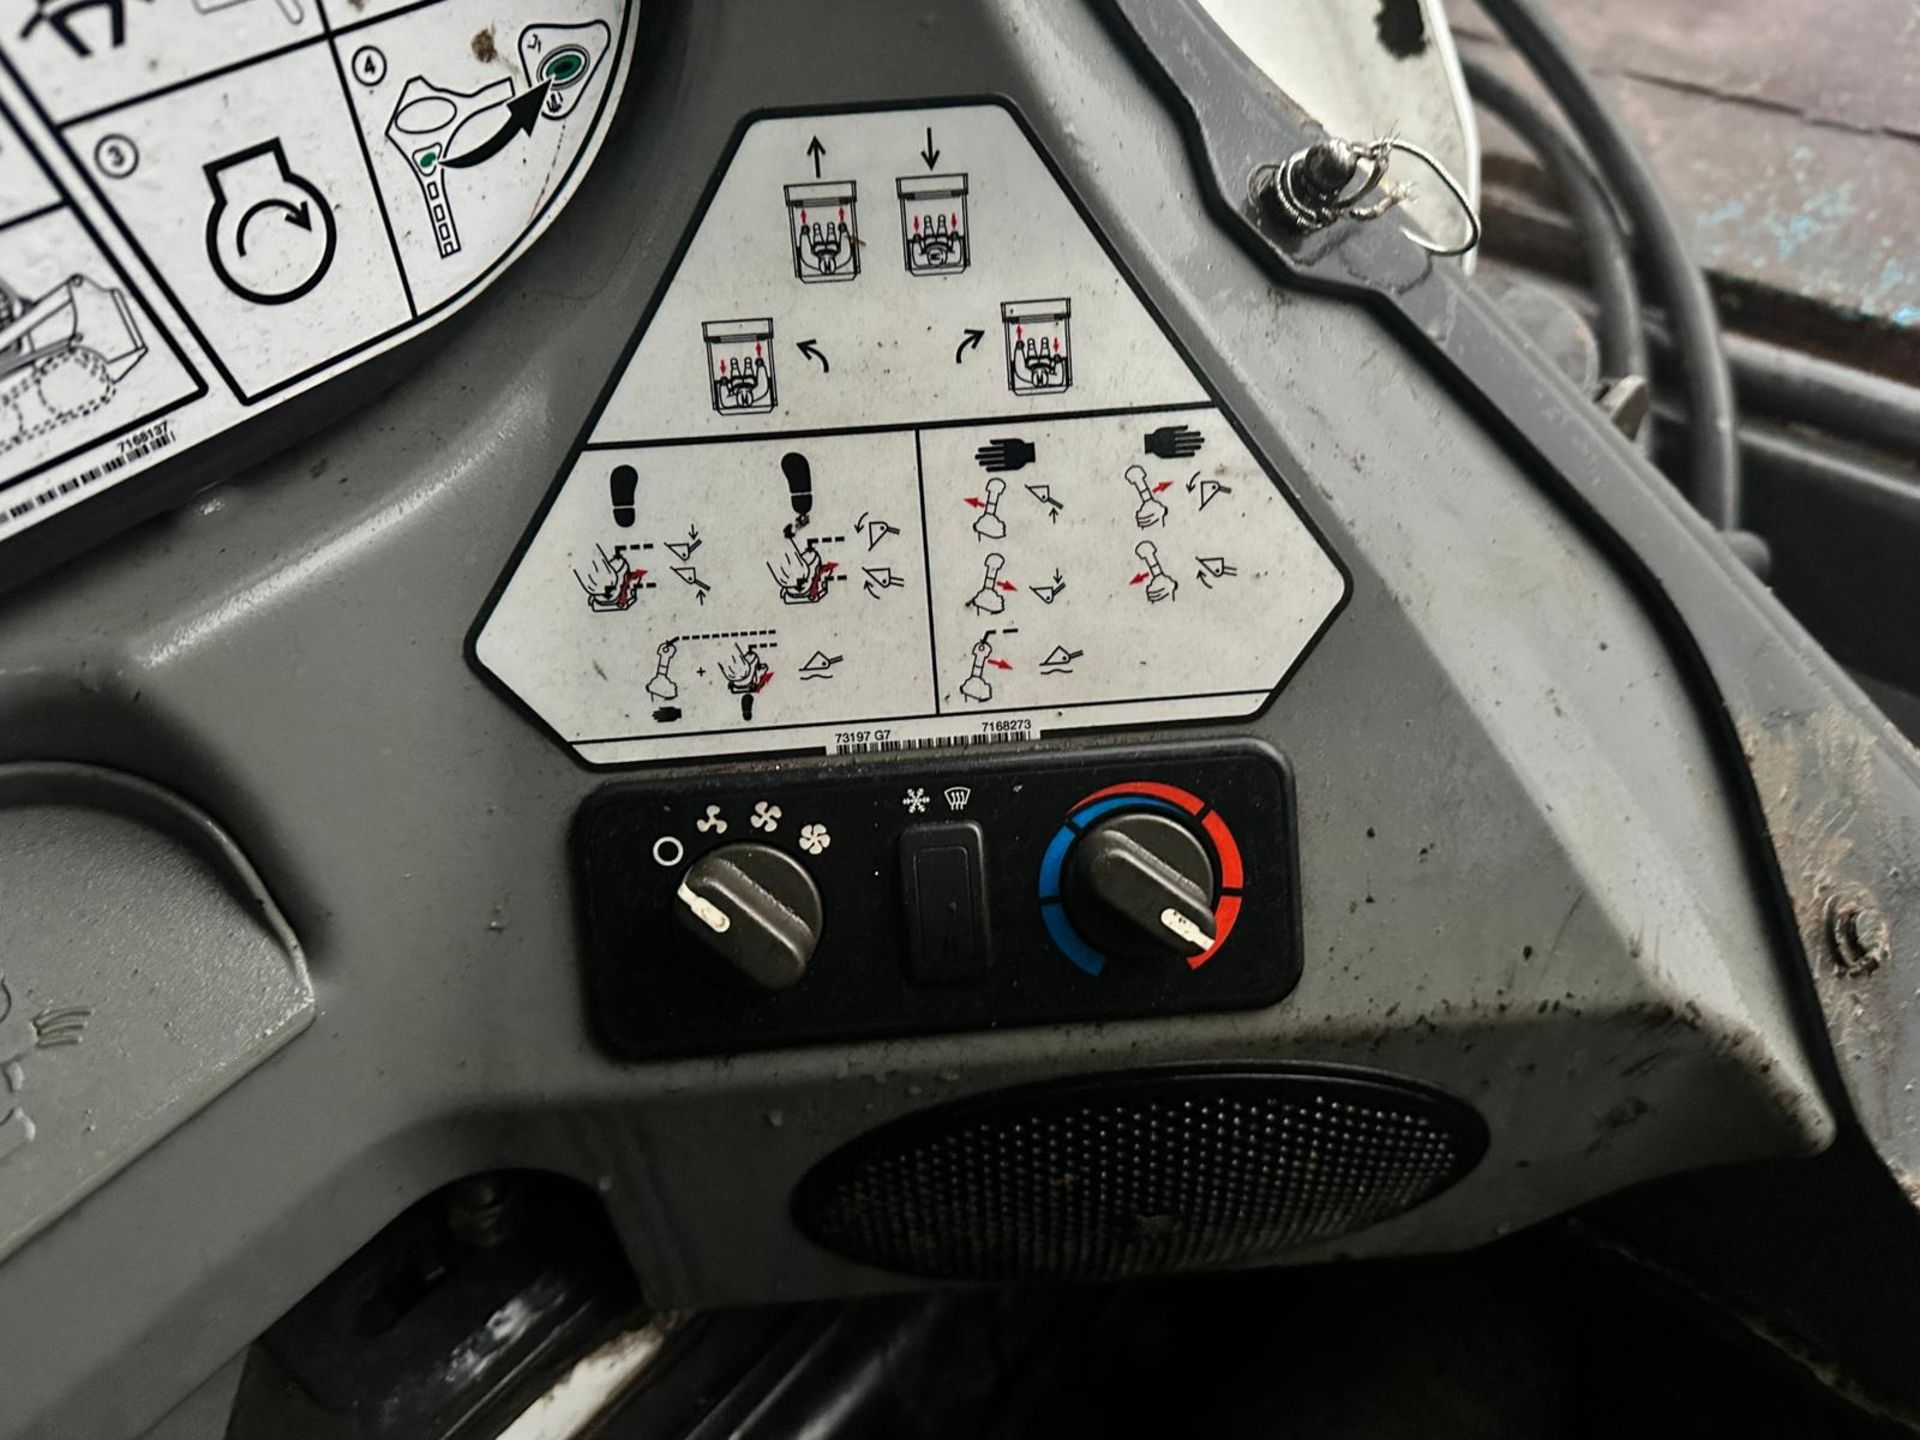 2019 BOBCAT S550 WHEELED SKIDSTEER LOADER WITH 54” BOBCAT SWEEPER BUCKET *PLUS VAT* - Image 13 of 16